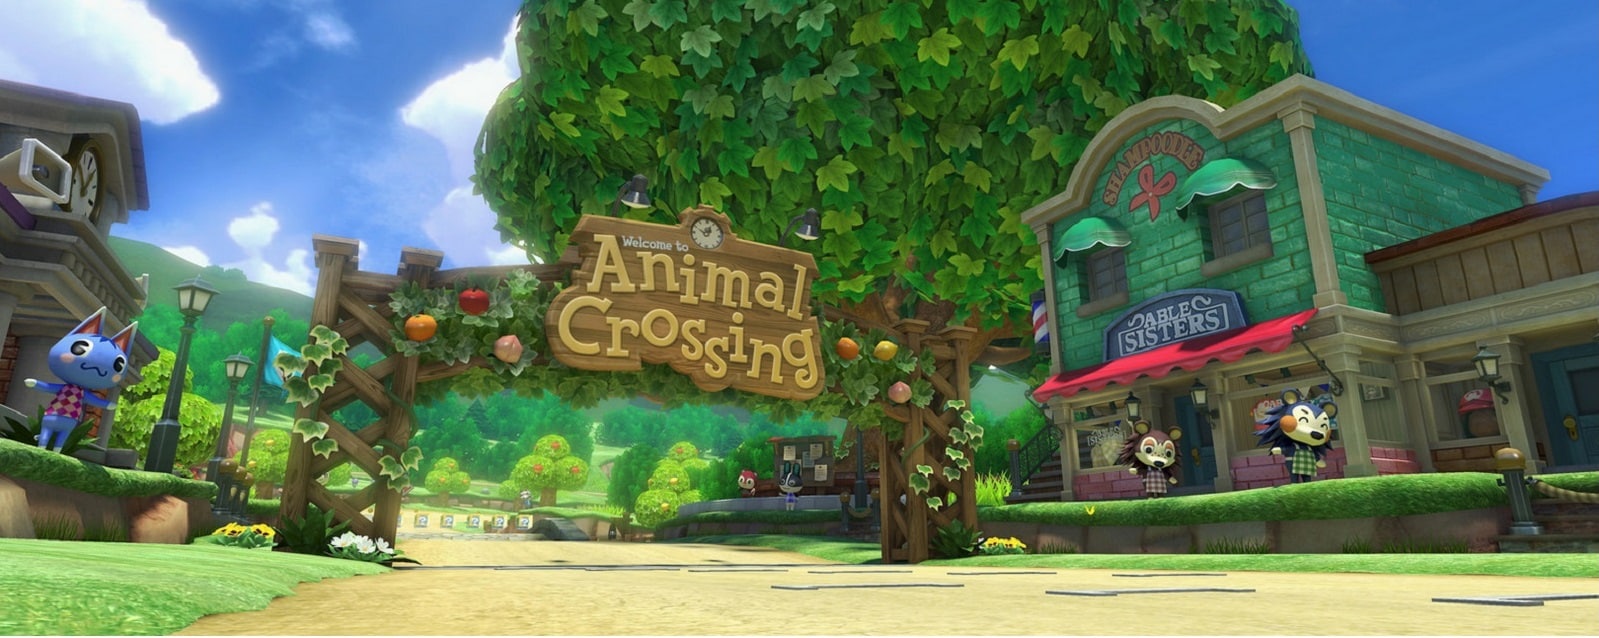 Mario Kart 8 Animal Crossing Tracks Gameplay Screenshot Starting Line Wii U